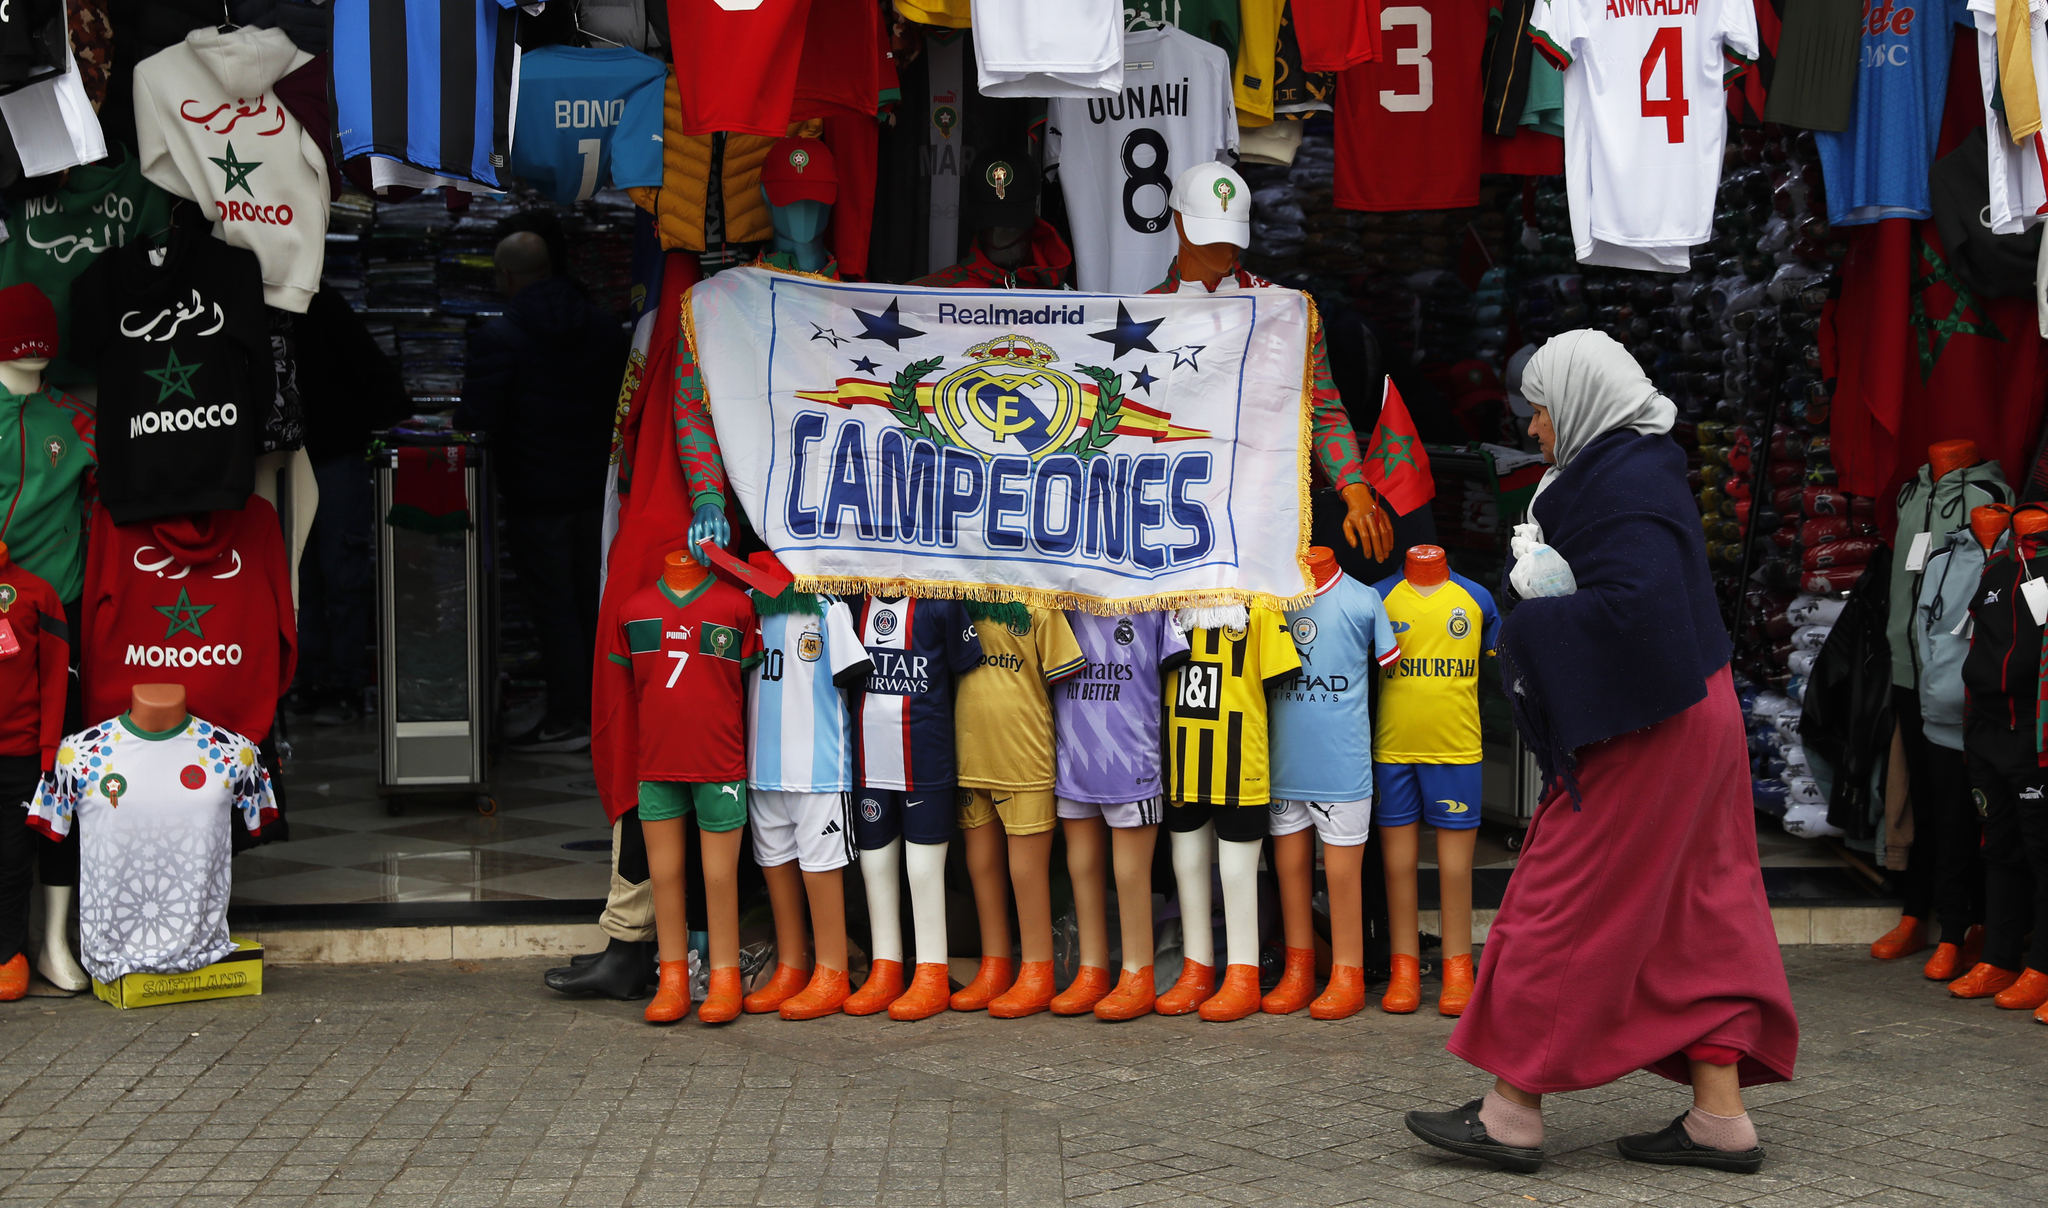 Una tienda del zoco de Rabat con multitud de camisetas, con dominio del Real Madrid y de la selección marroquí